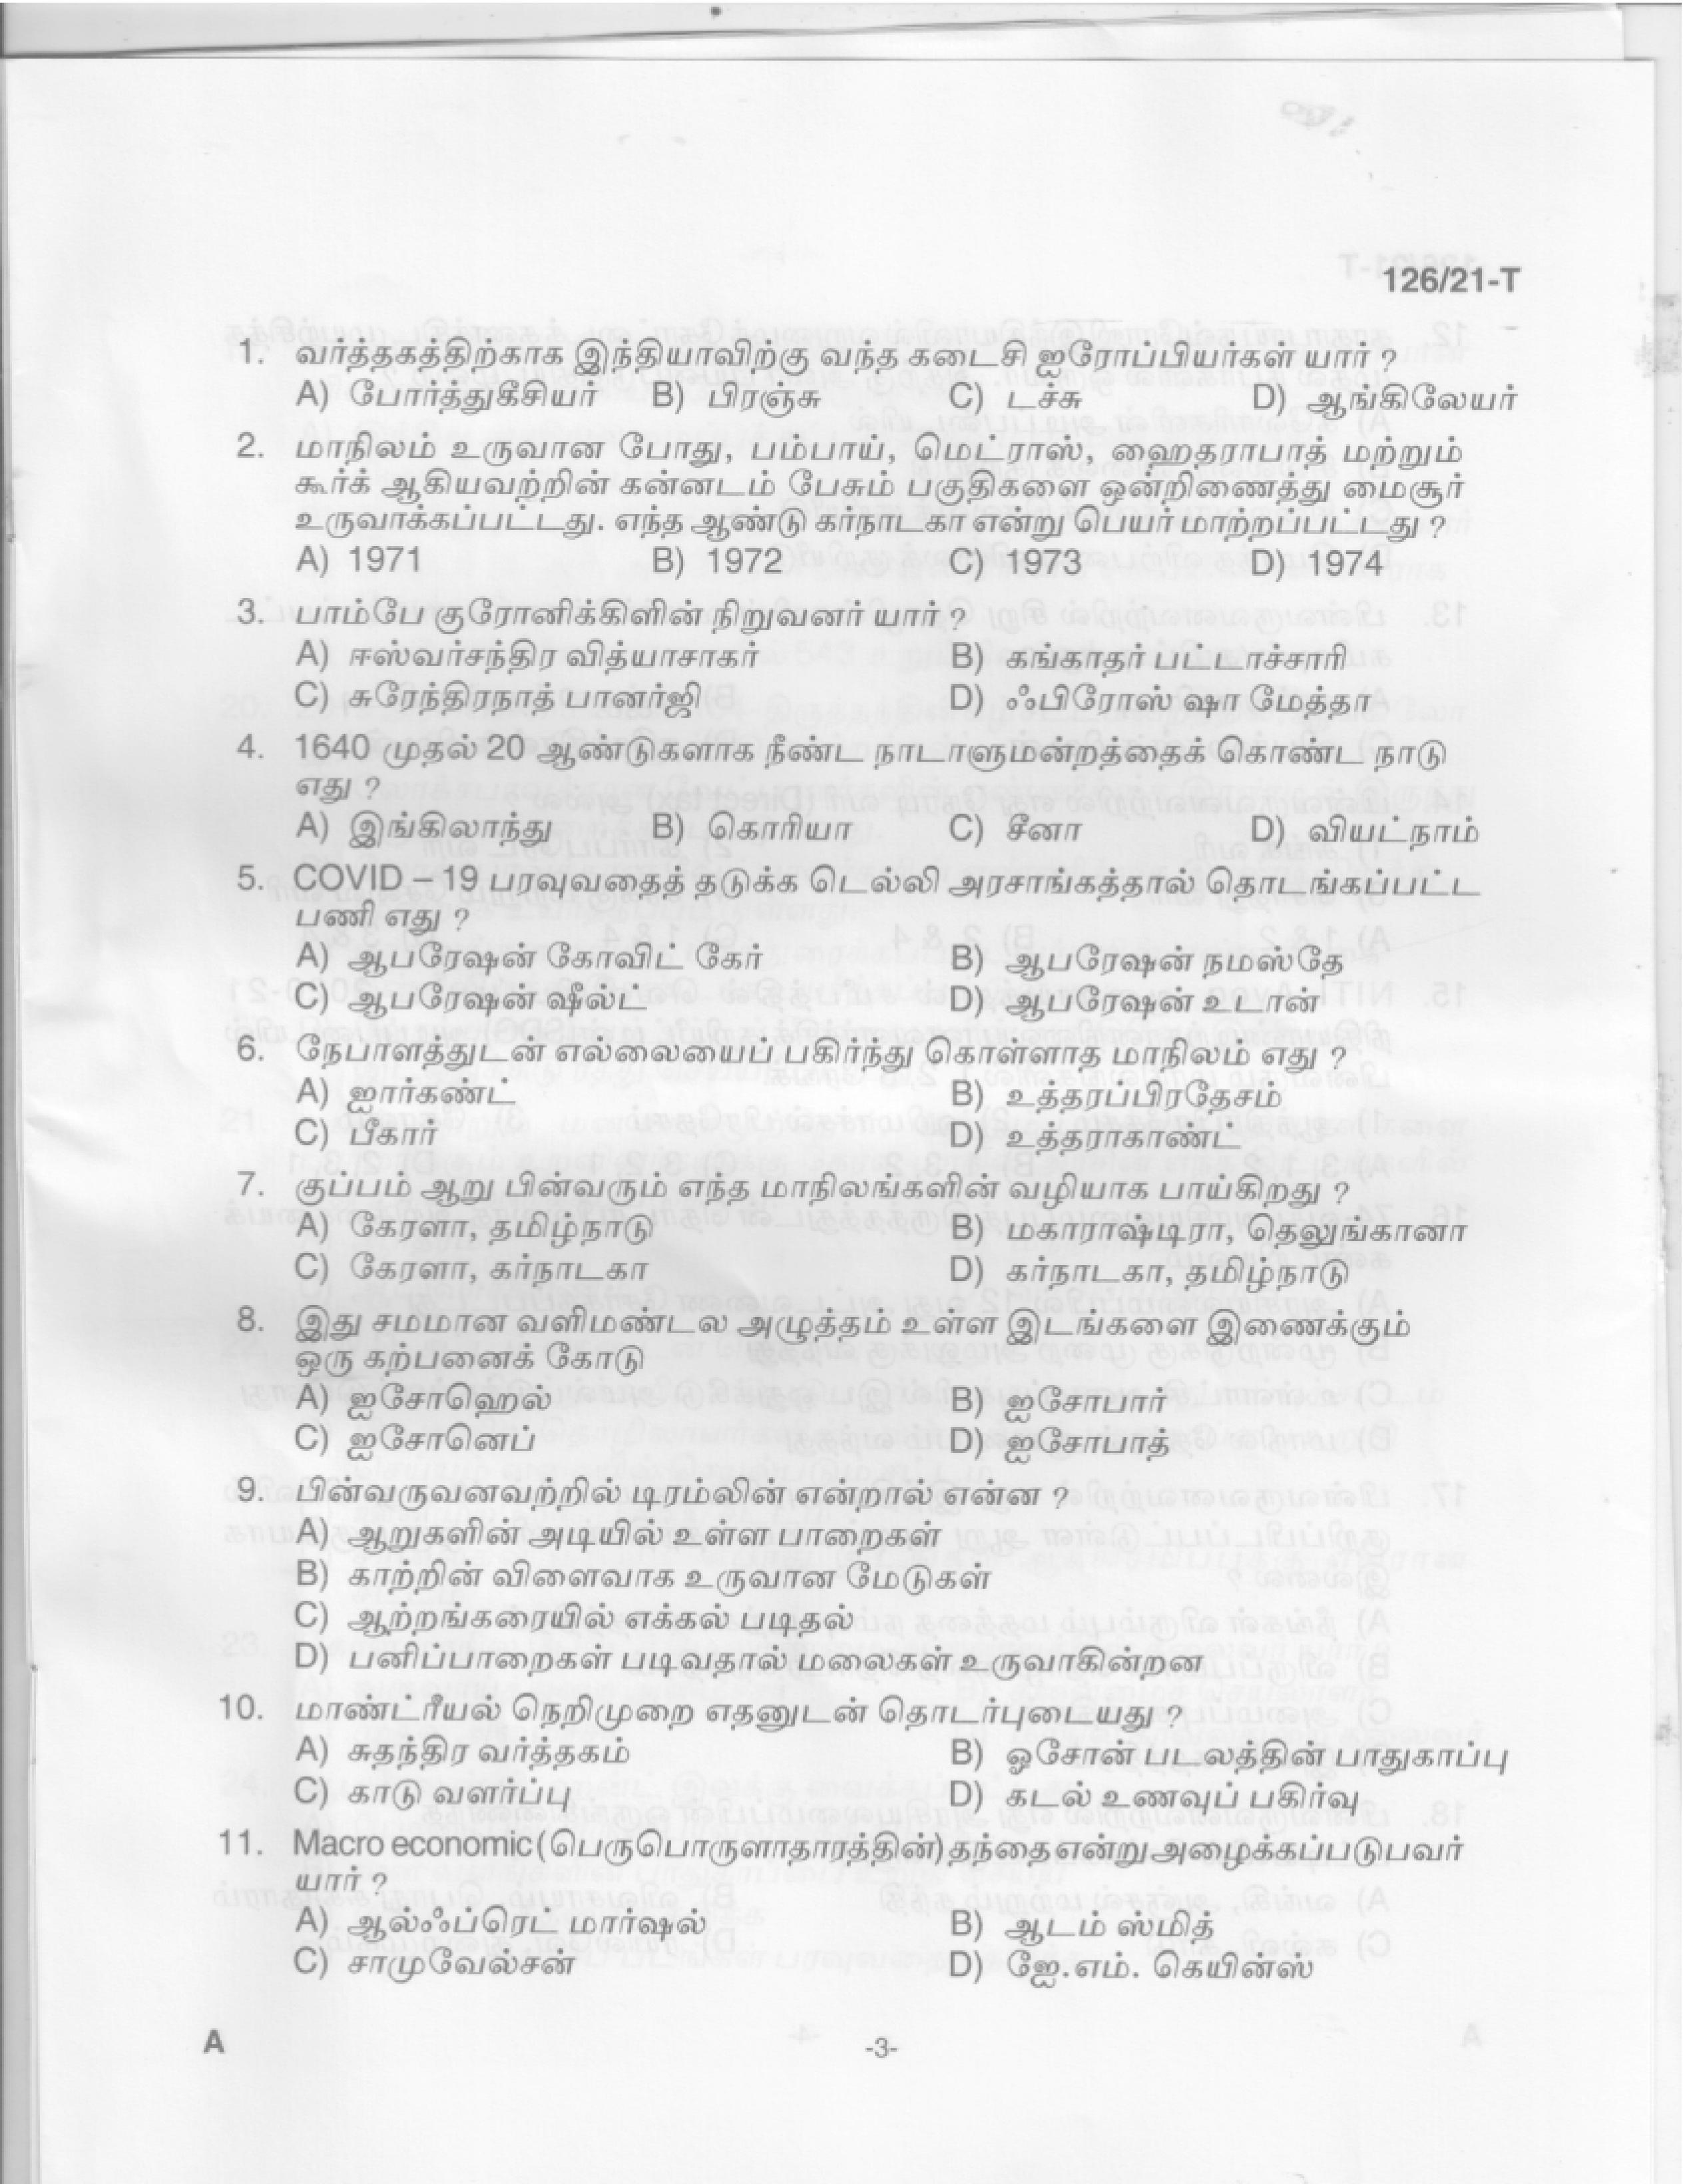 Upto SSLC Level Main Exam Assistant Compiler Tamil Exam 2021 Code 1262021 T 1